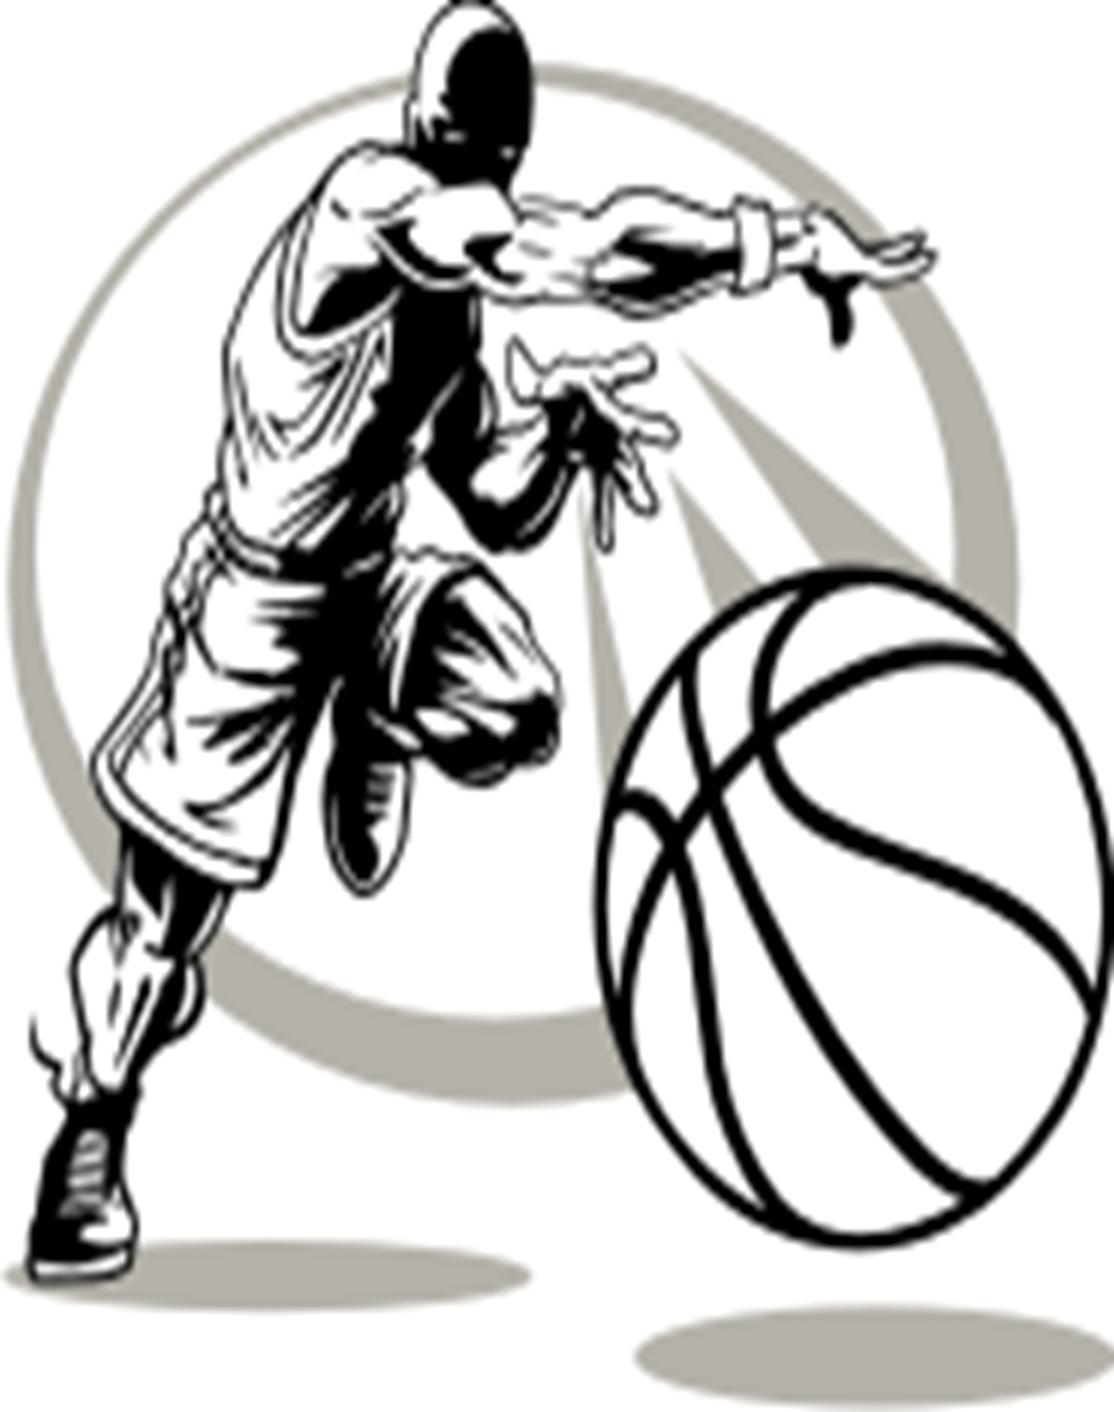 Basketball Logos Clipart